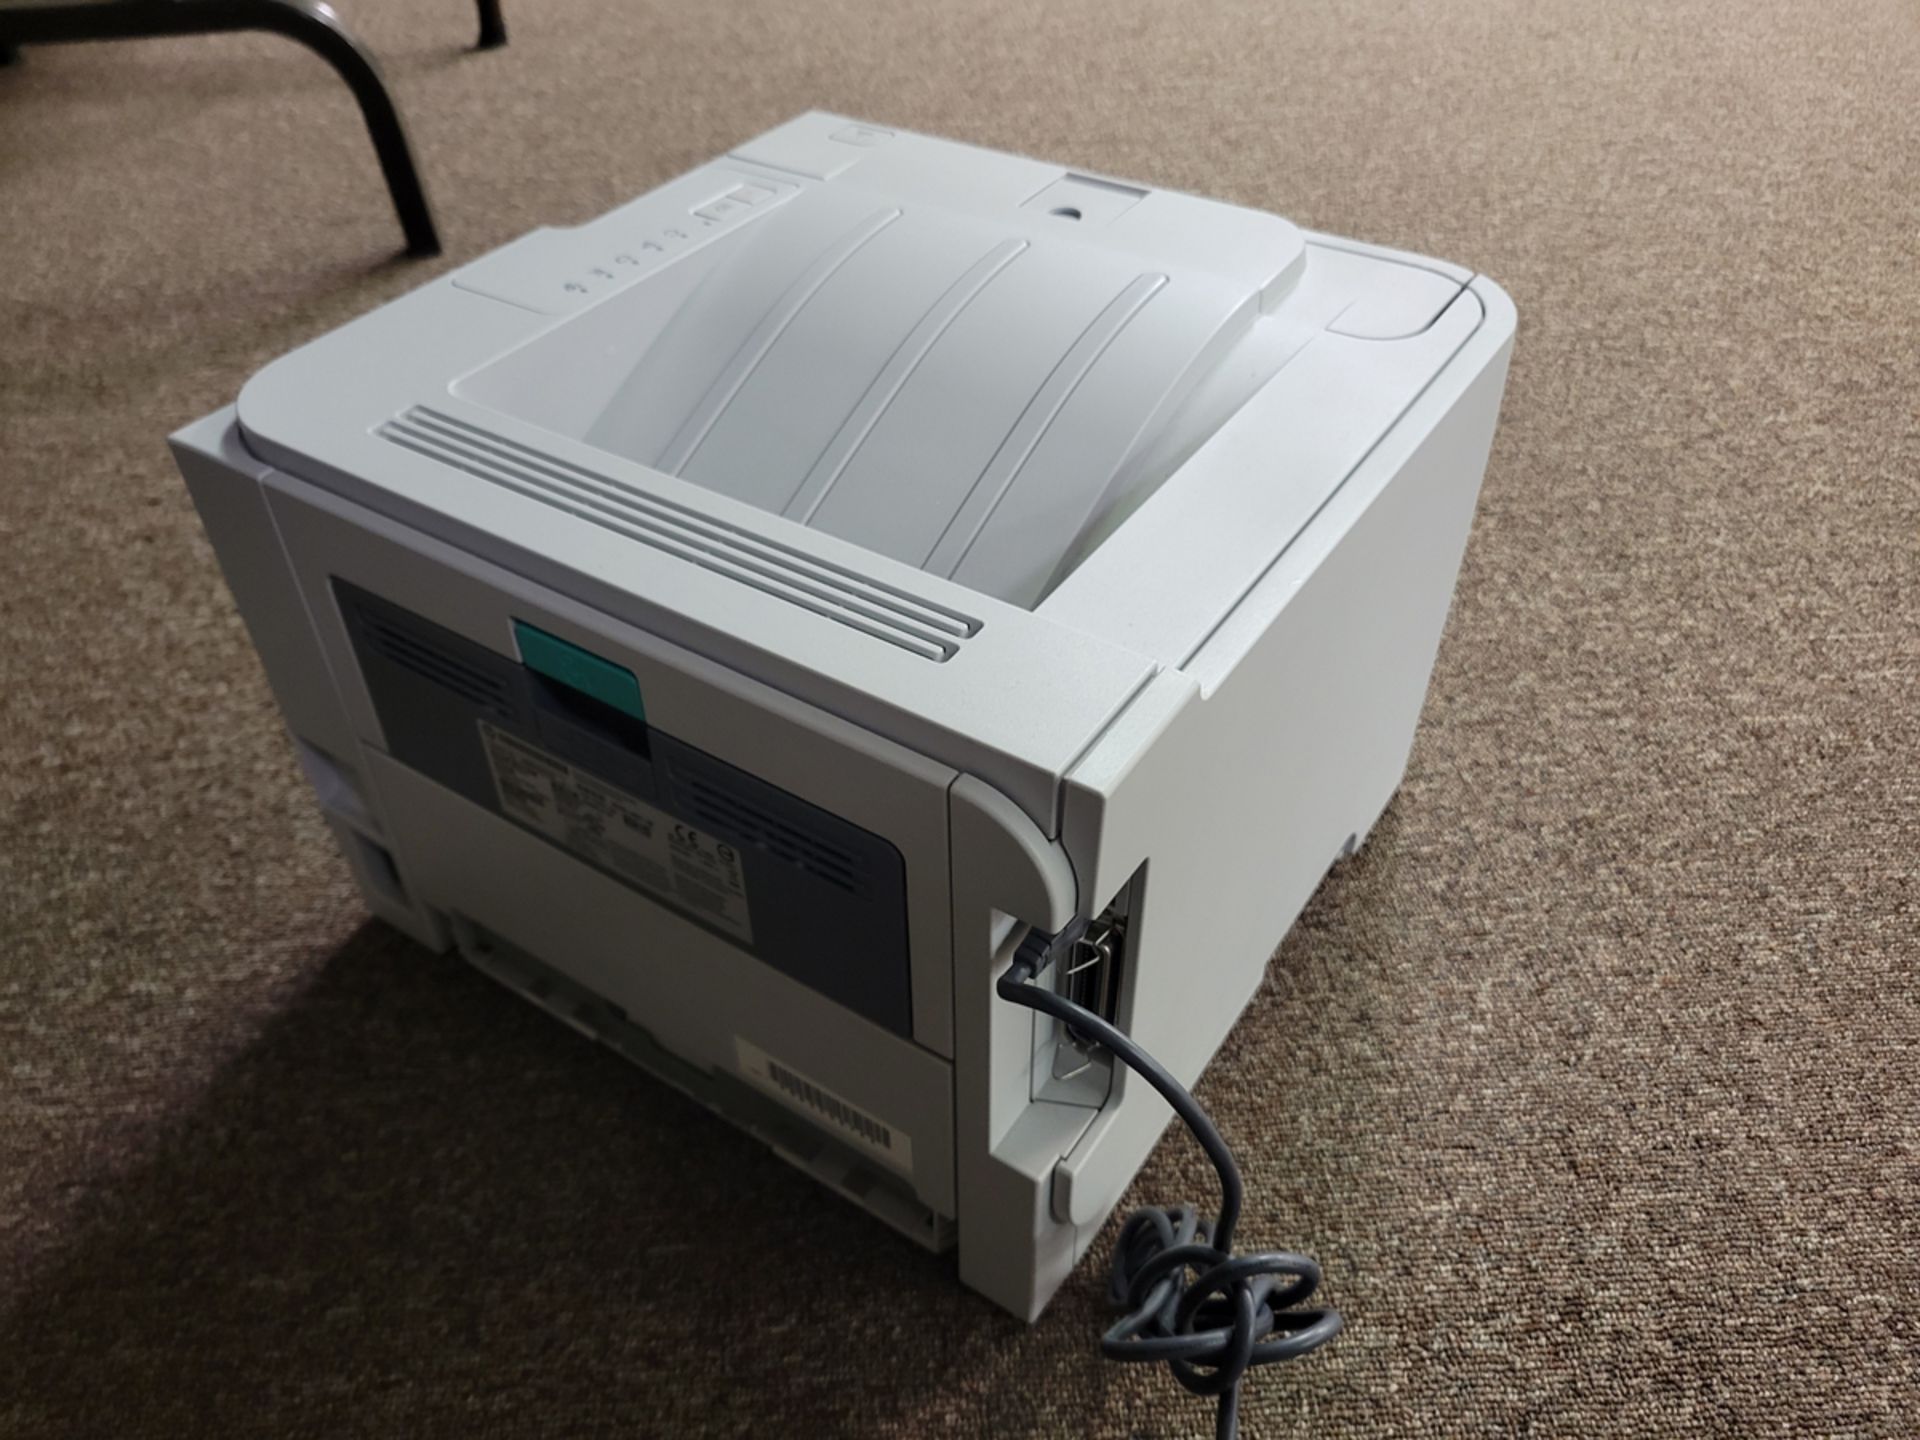 HP LaserJet P2035 Printer - Image 2 of 3